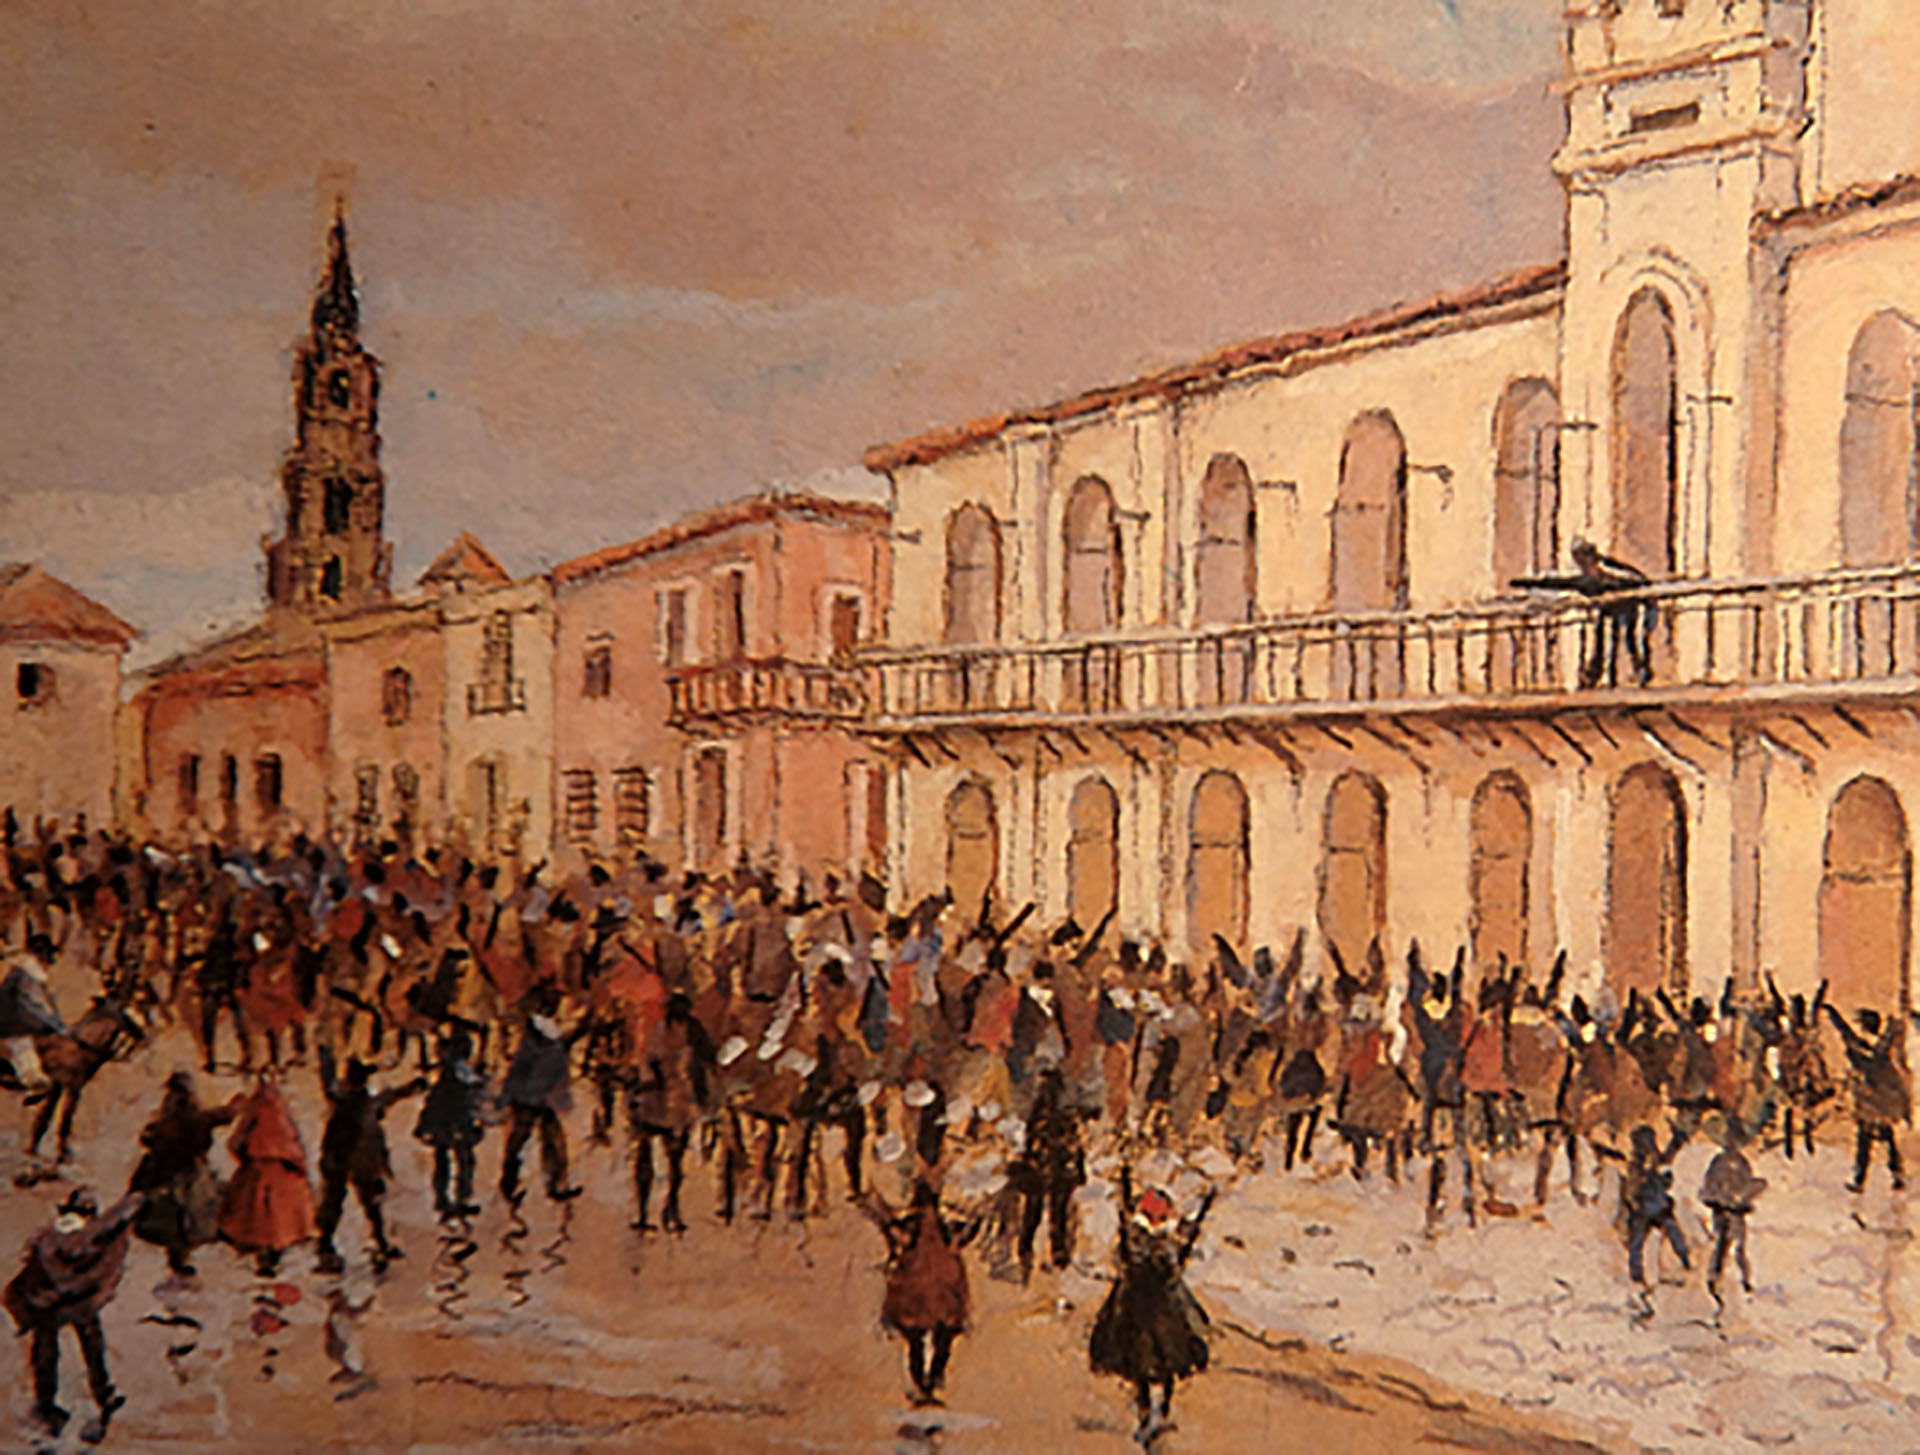 Juan Larrea no participó del cabildo abierto del 22 de mayo de 1810. Fue convocado a la Junta por su posición en la sociedad rioplatense, donde era un próspero comerciante